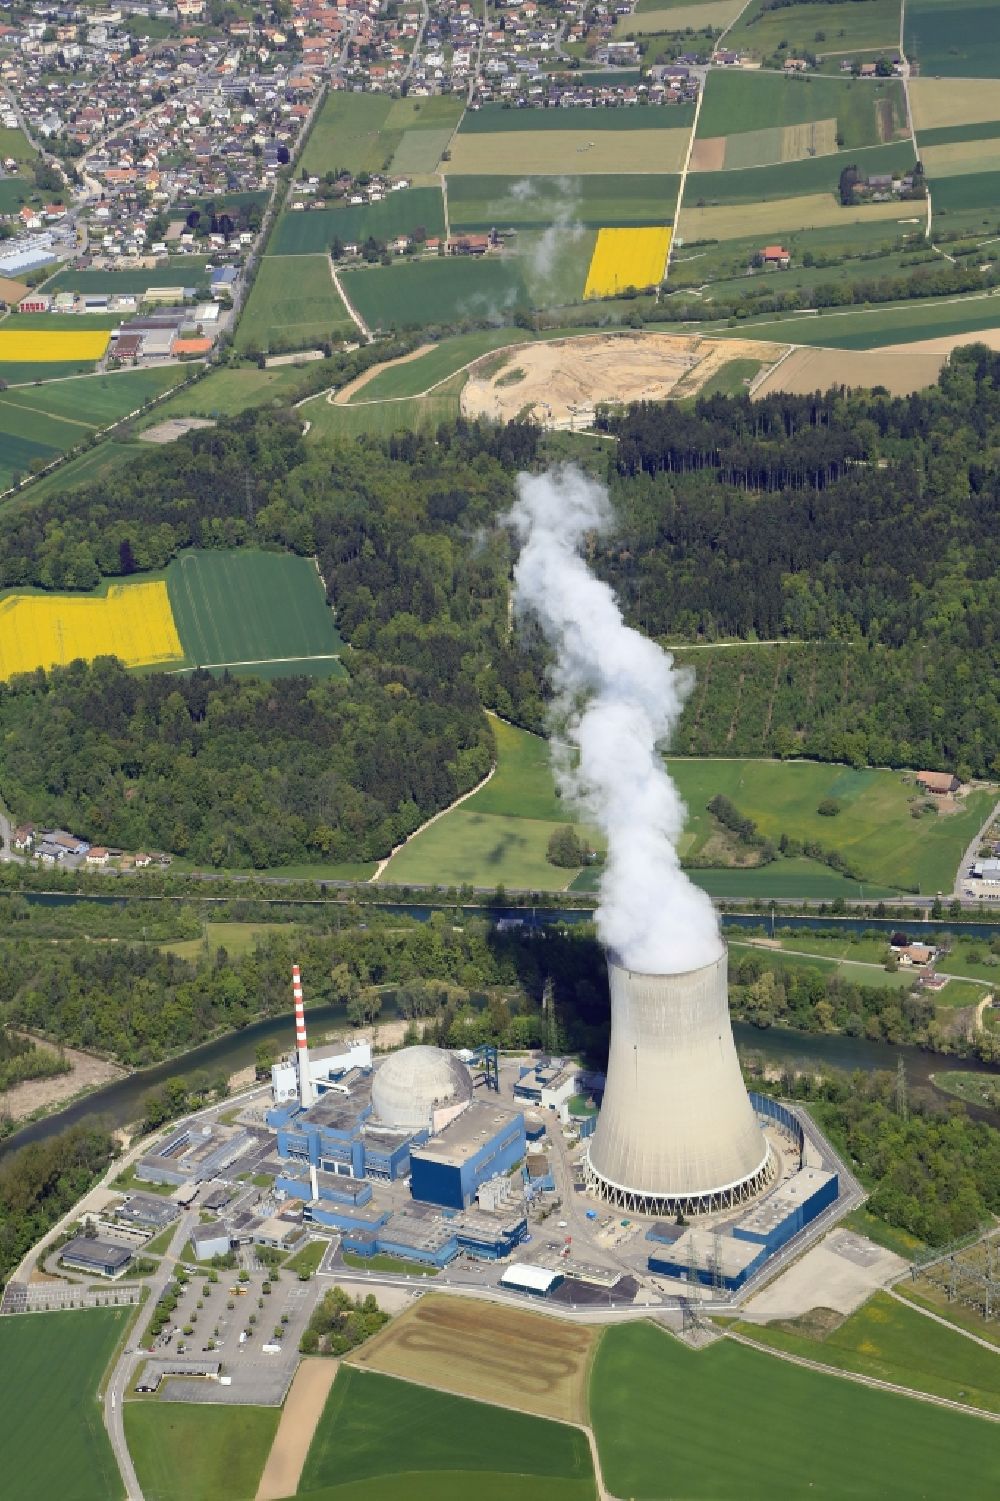 Däniken aus der Vogelperspektive: Reaktorblöcke und Anlagen des AKW - KKW Kernkraftwerk Gösgen in Däniken in Solothurn, Schweiz